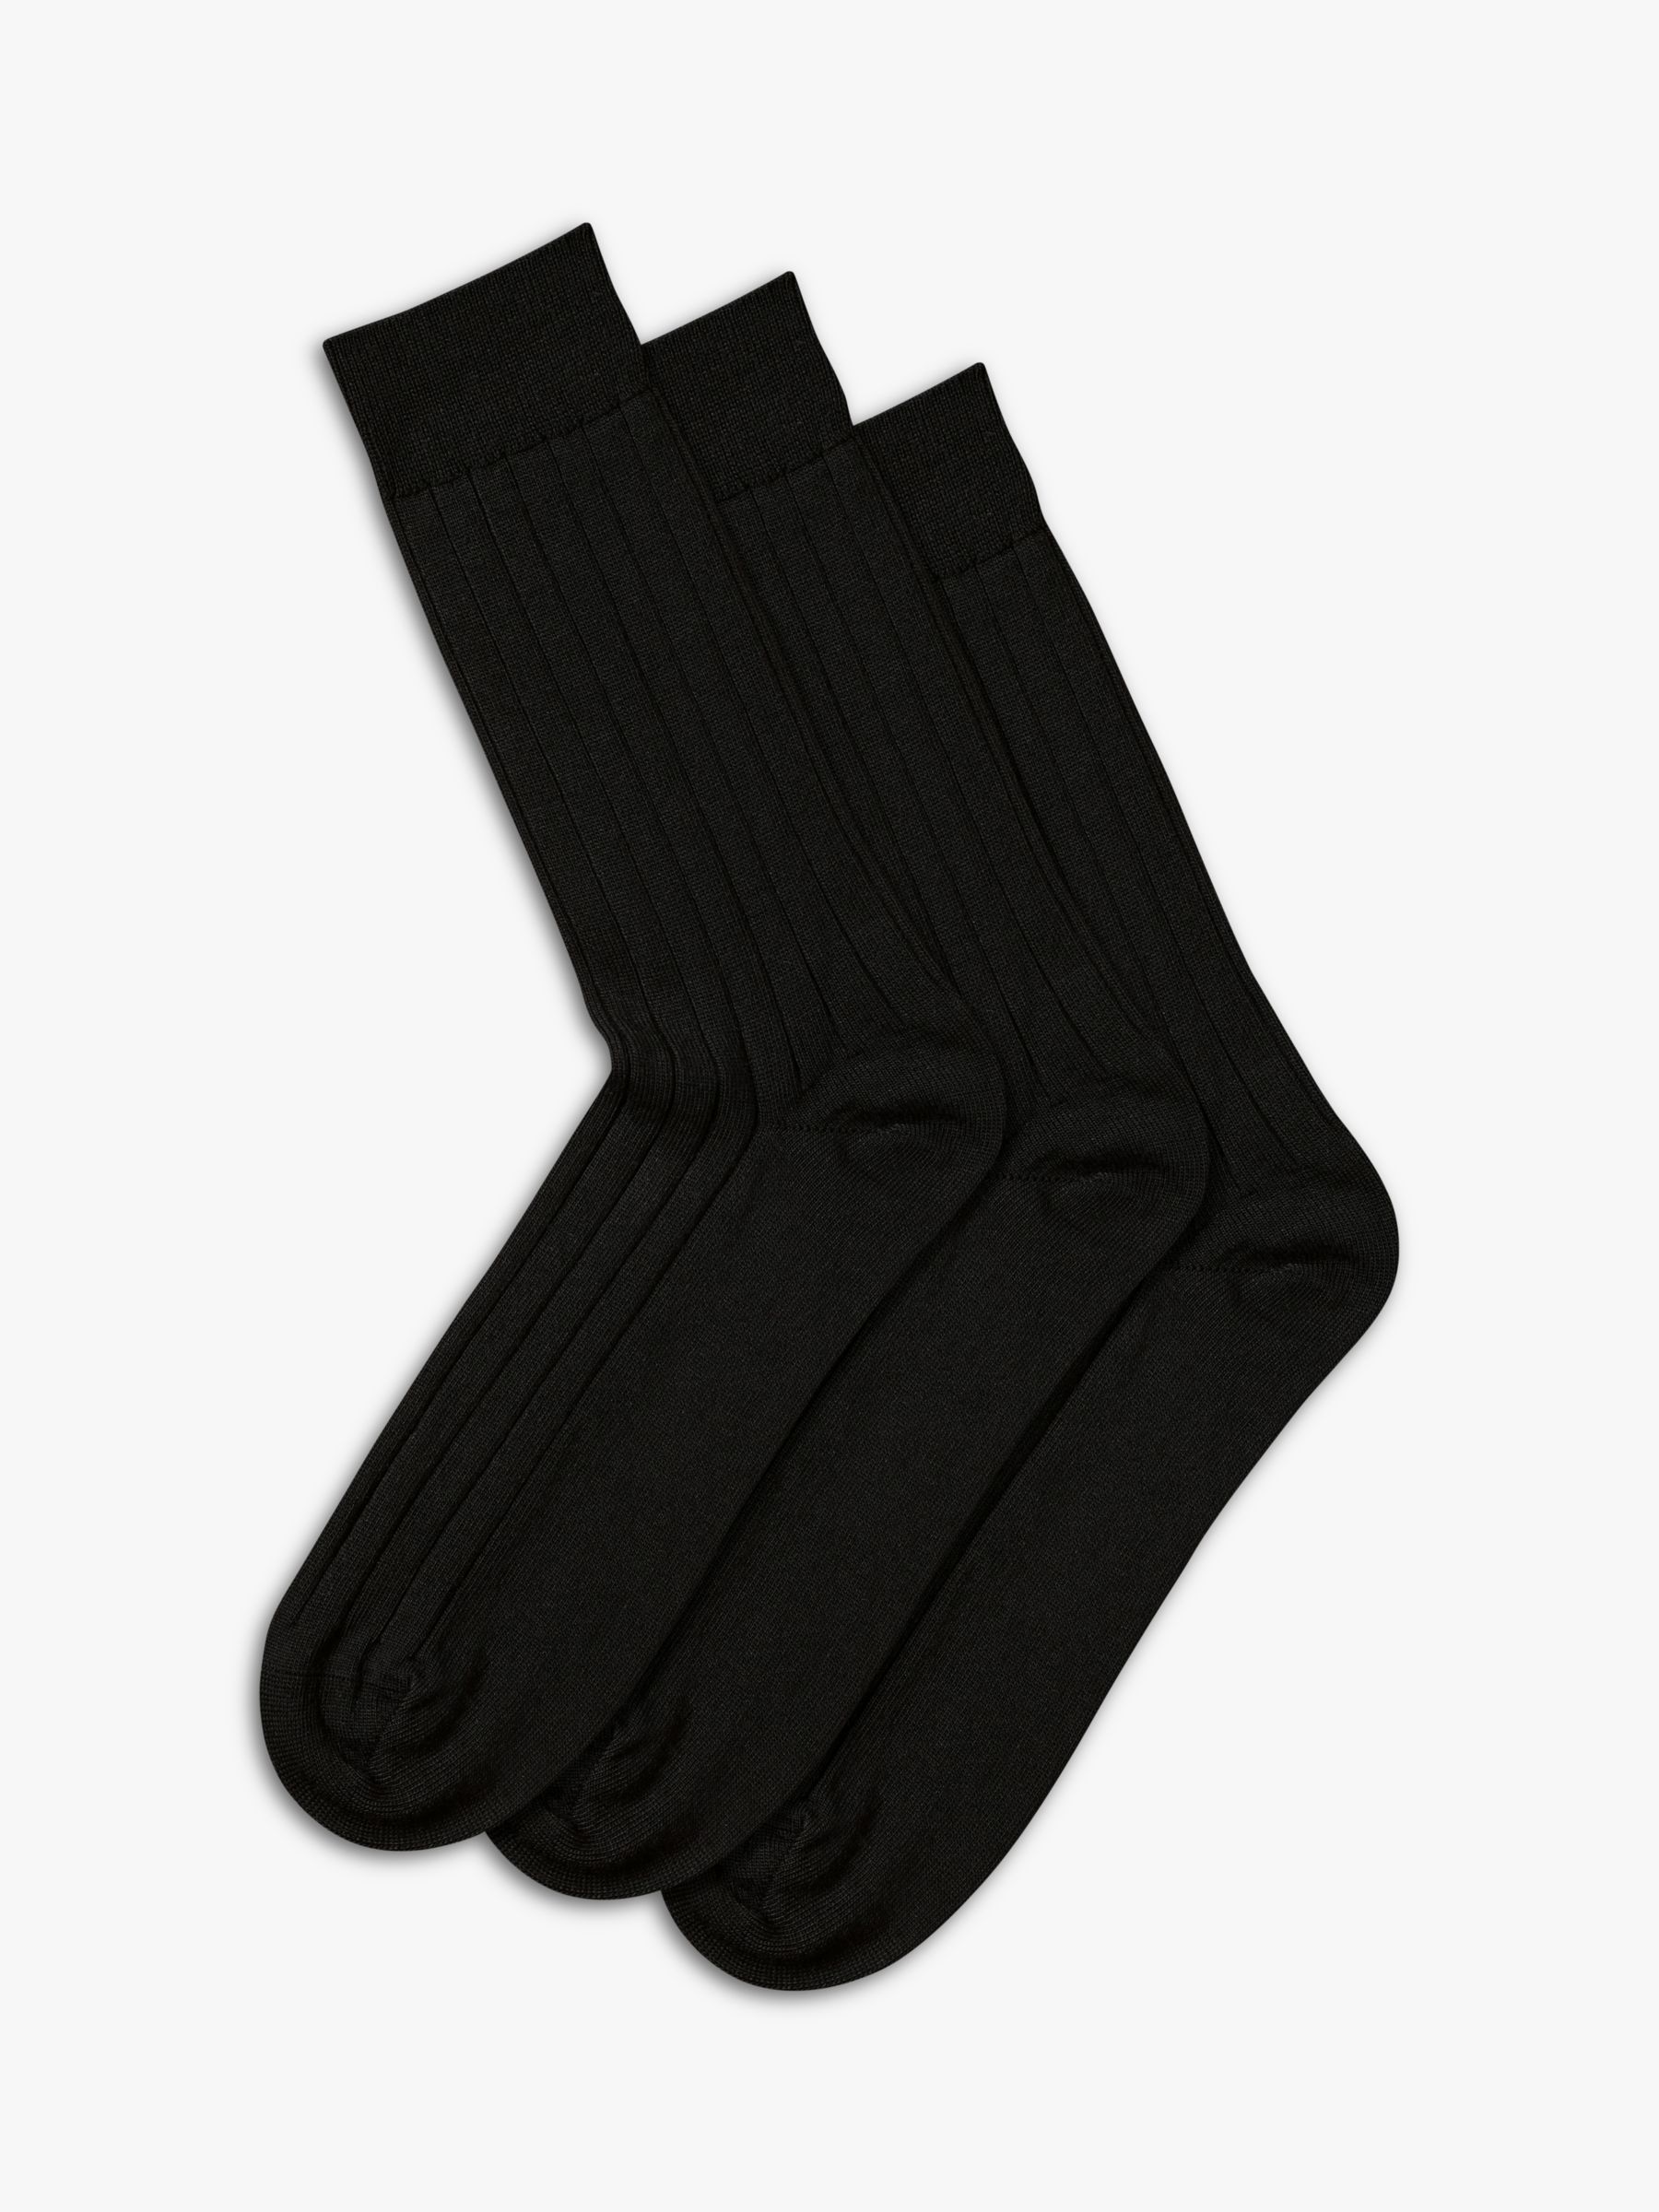 Charles Tyrwhitt Wool Rich Socks, Pack of 3, Black, M